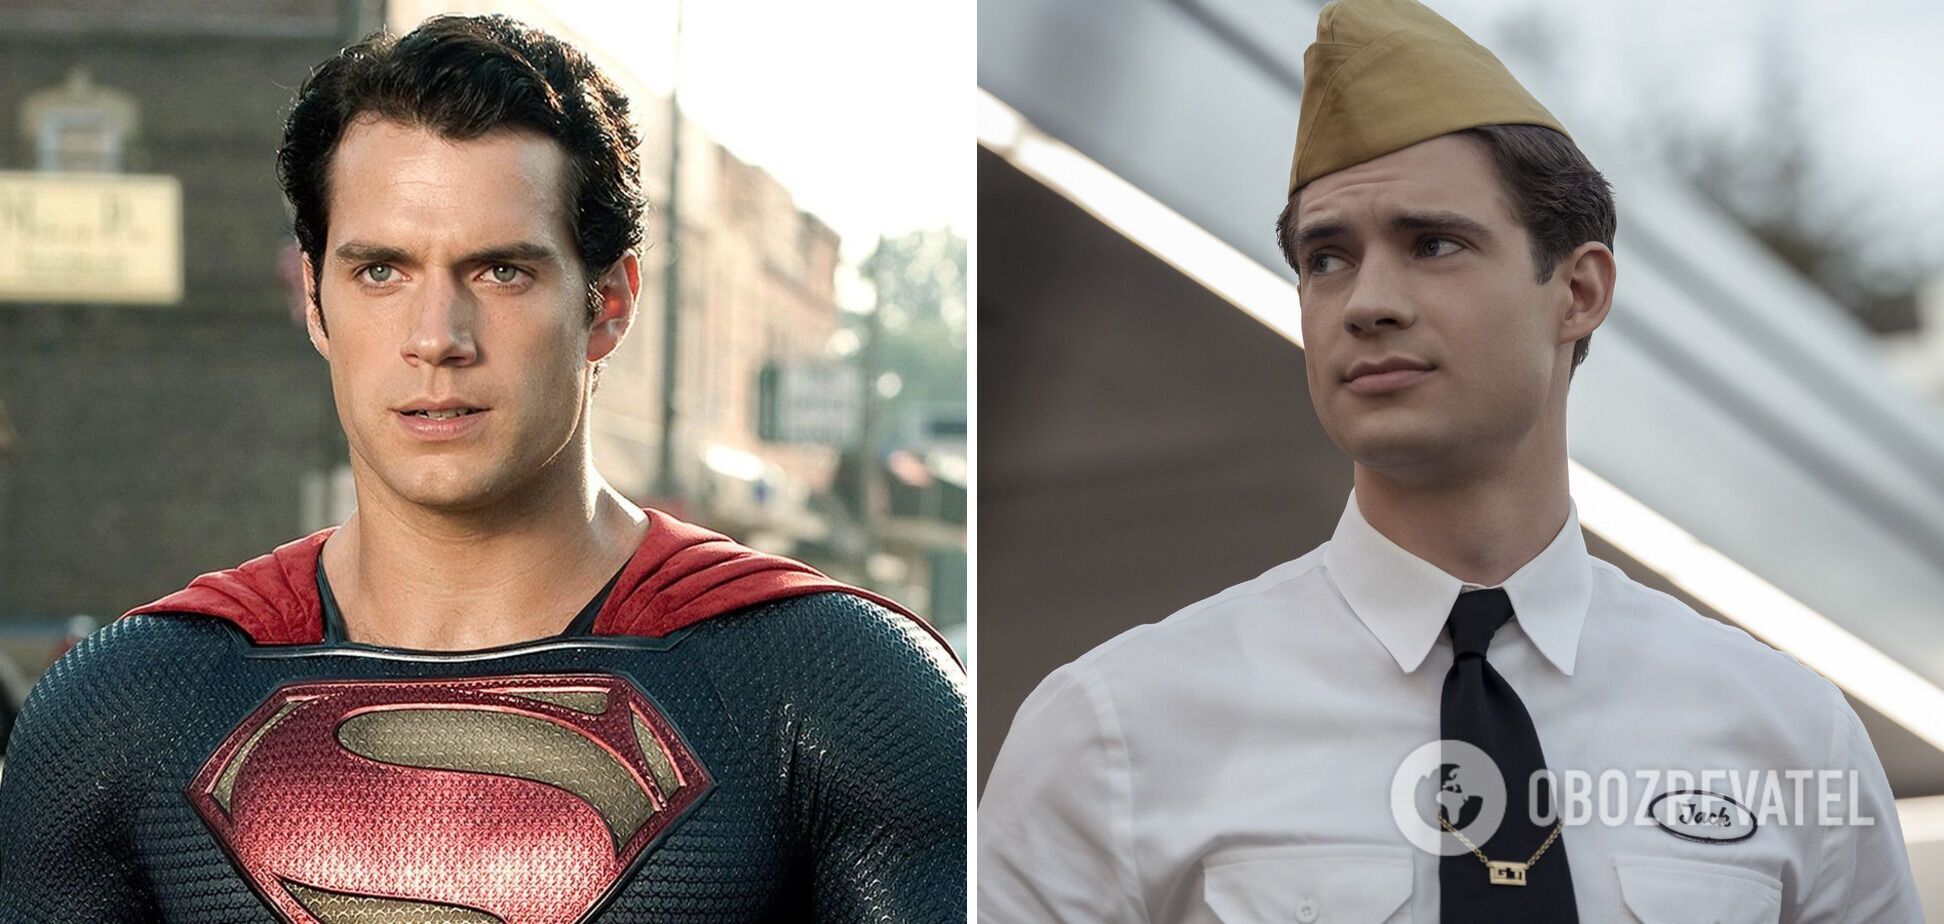 "Просто дешевая копия": фанаты раскритиковали выбор нового актера на роль Супермена. Фото